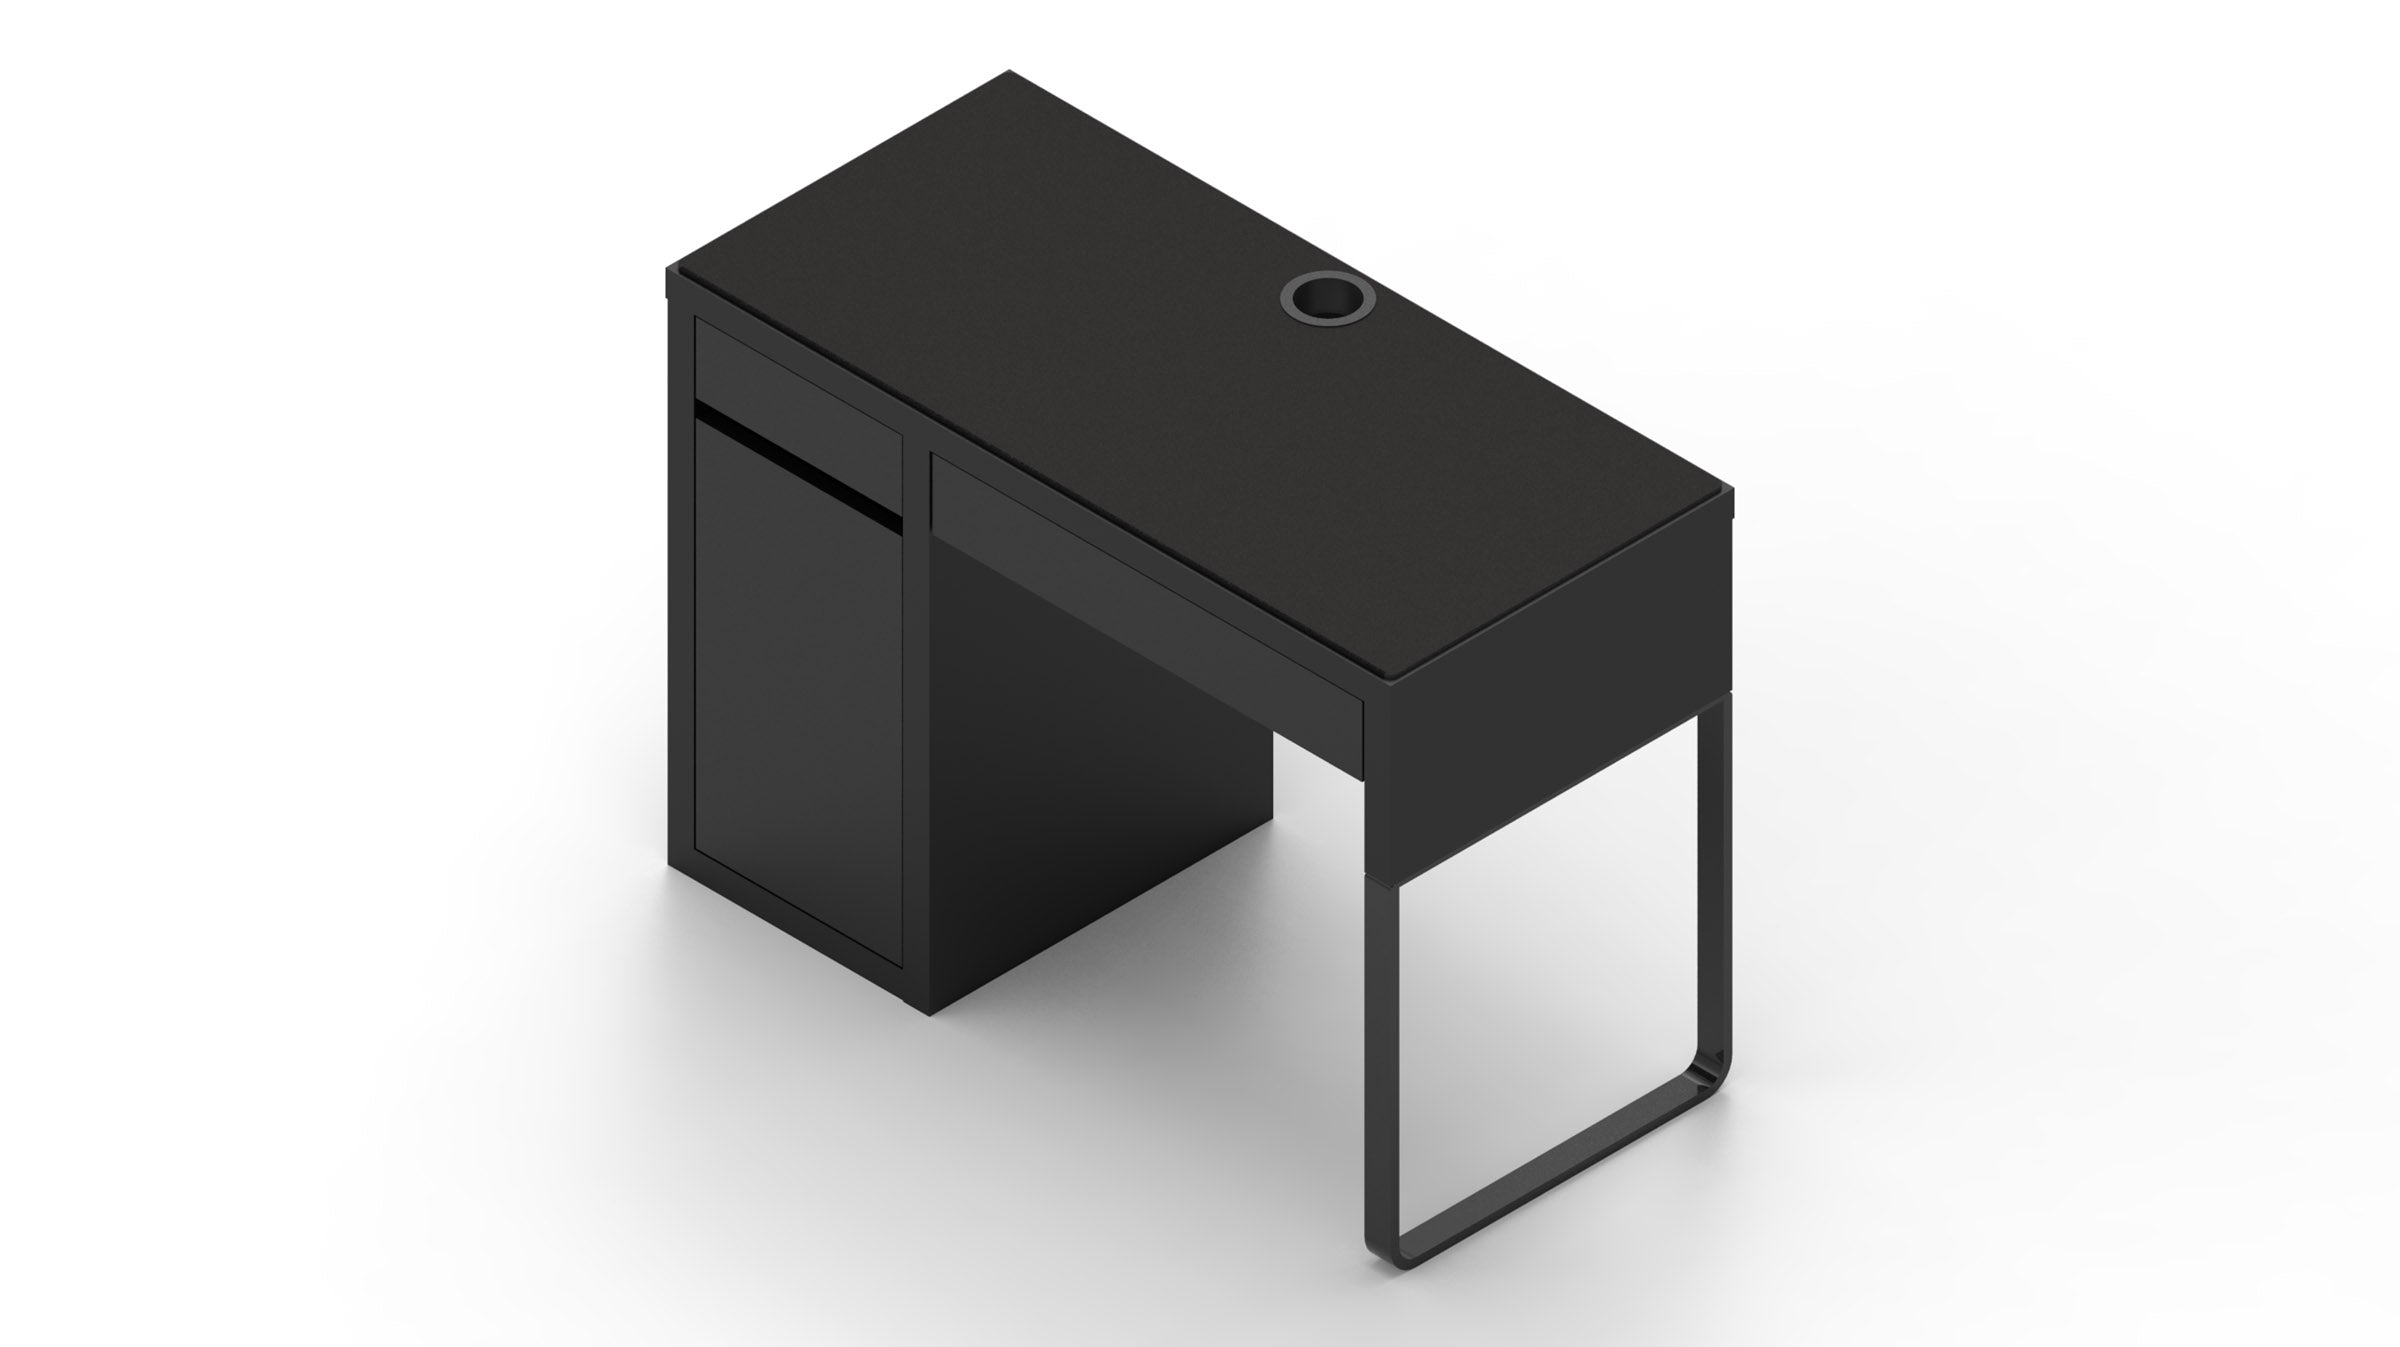 MK Black IKEA MICKE Desk Mat (41" / 105 cm) Full-desk Mouse Pad MKK7WLDO2D |58935|